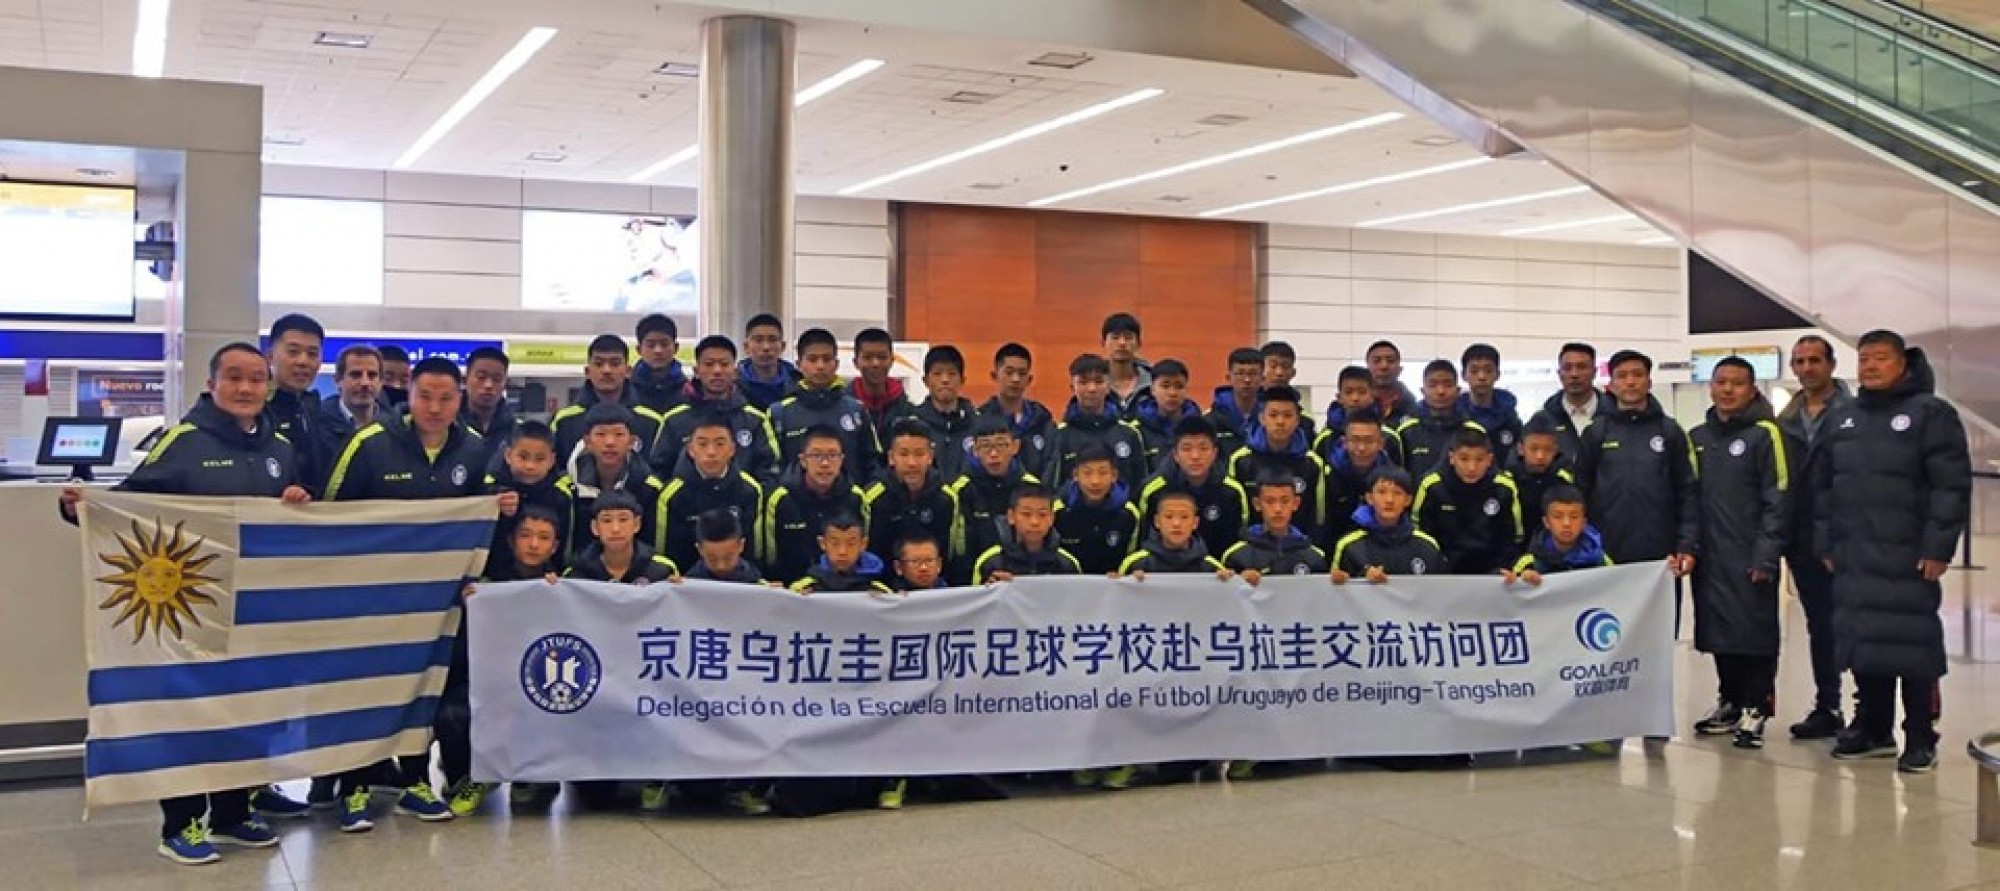 Alcalde de Tangshan-China visitó Uruguay para conocer el modelo de fútbol infantil y juvenil uruguayo